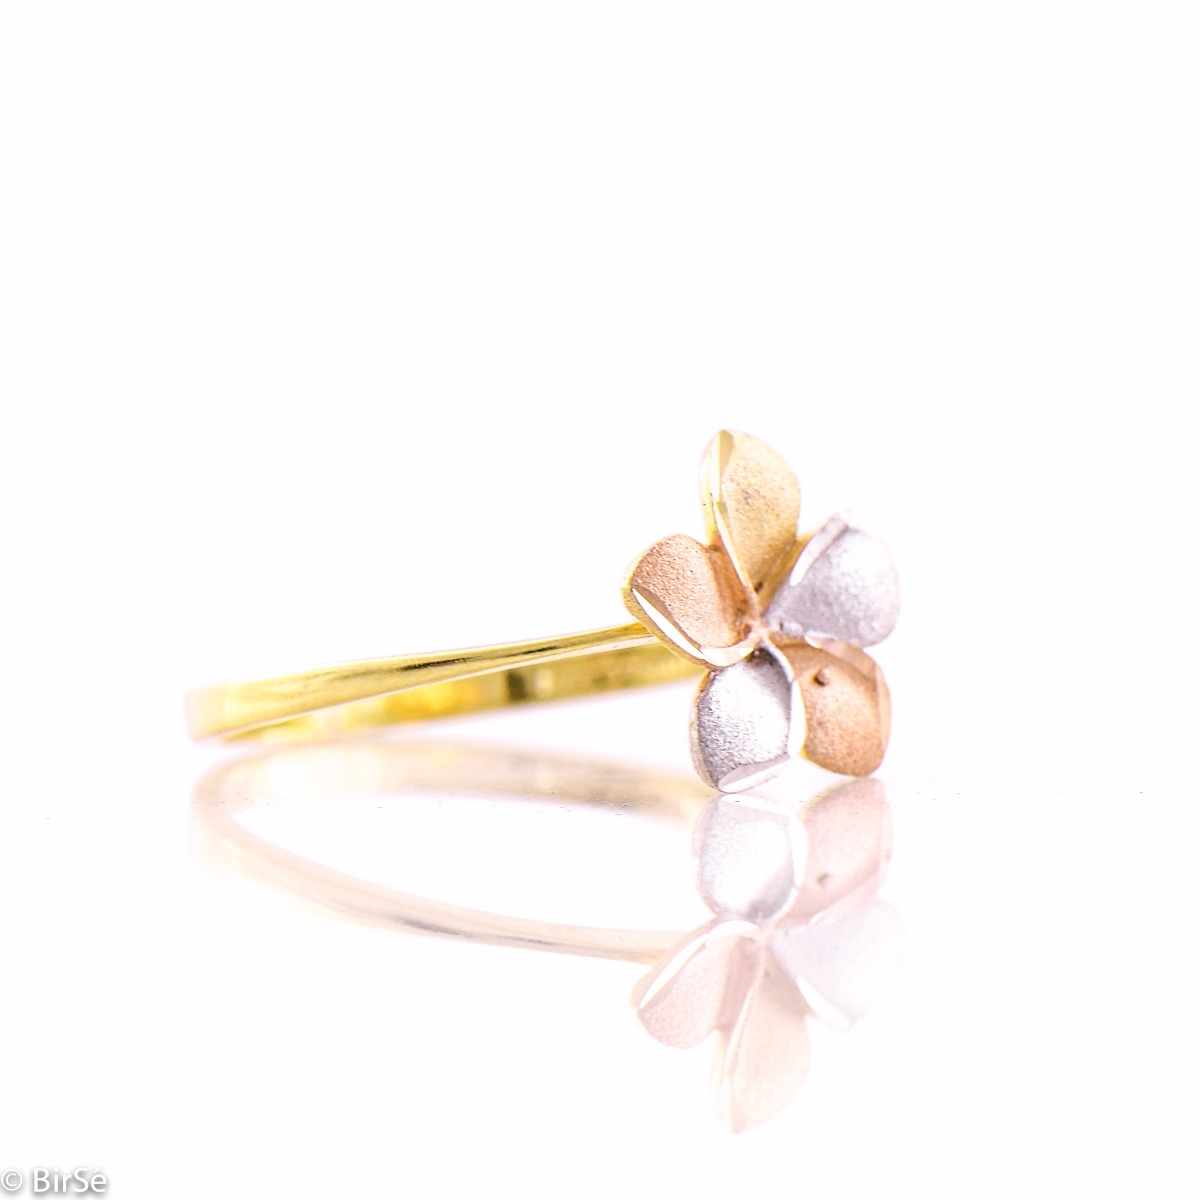 Златен пръстен - Три цвята